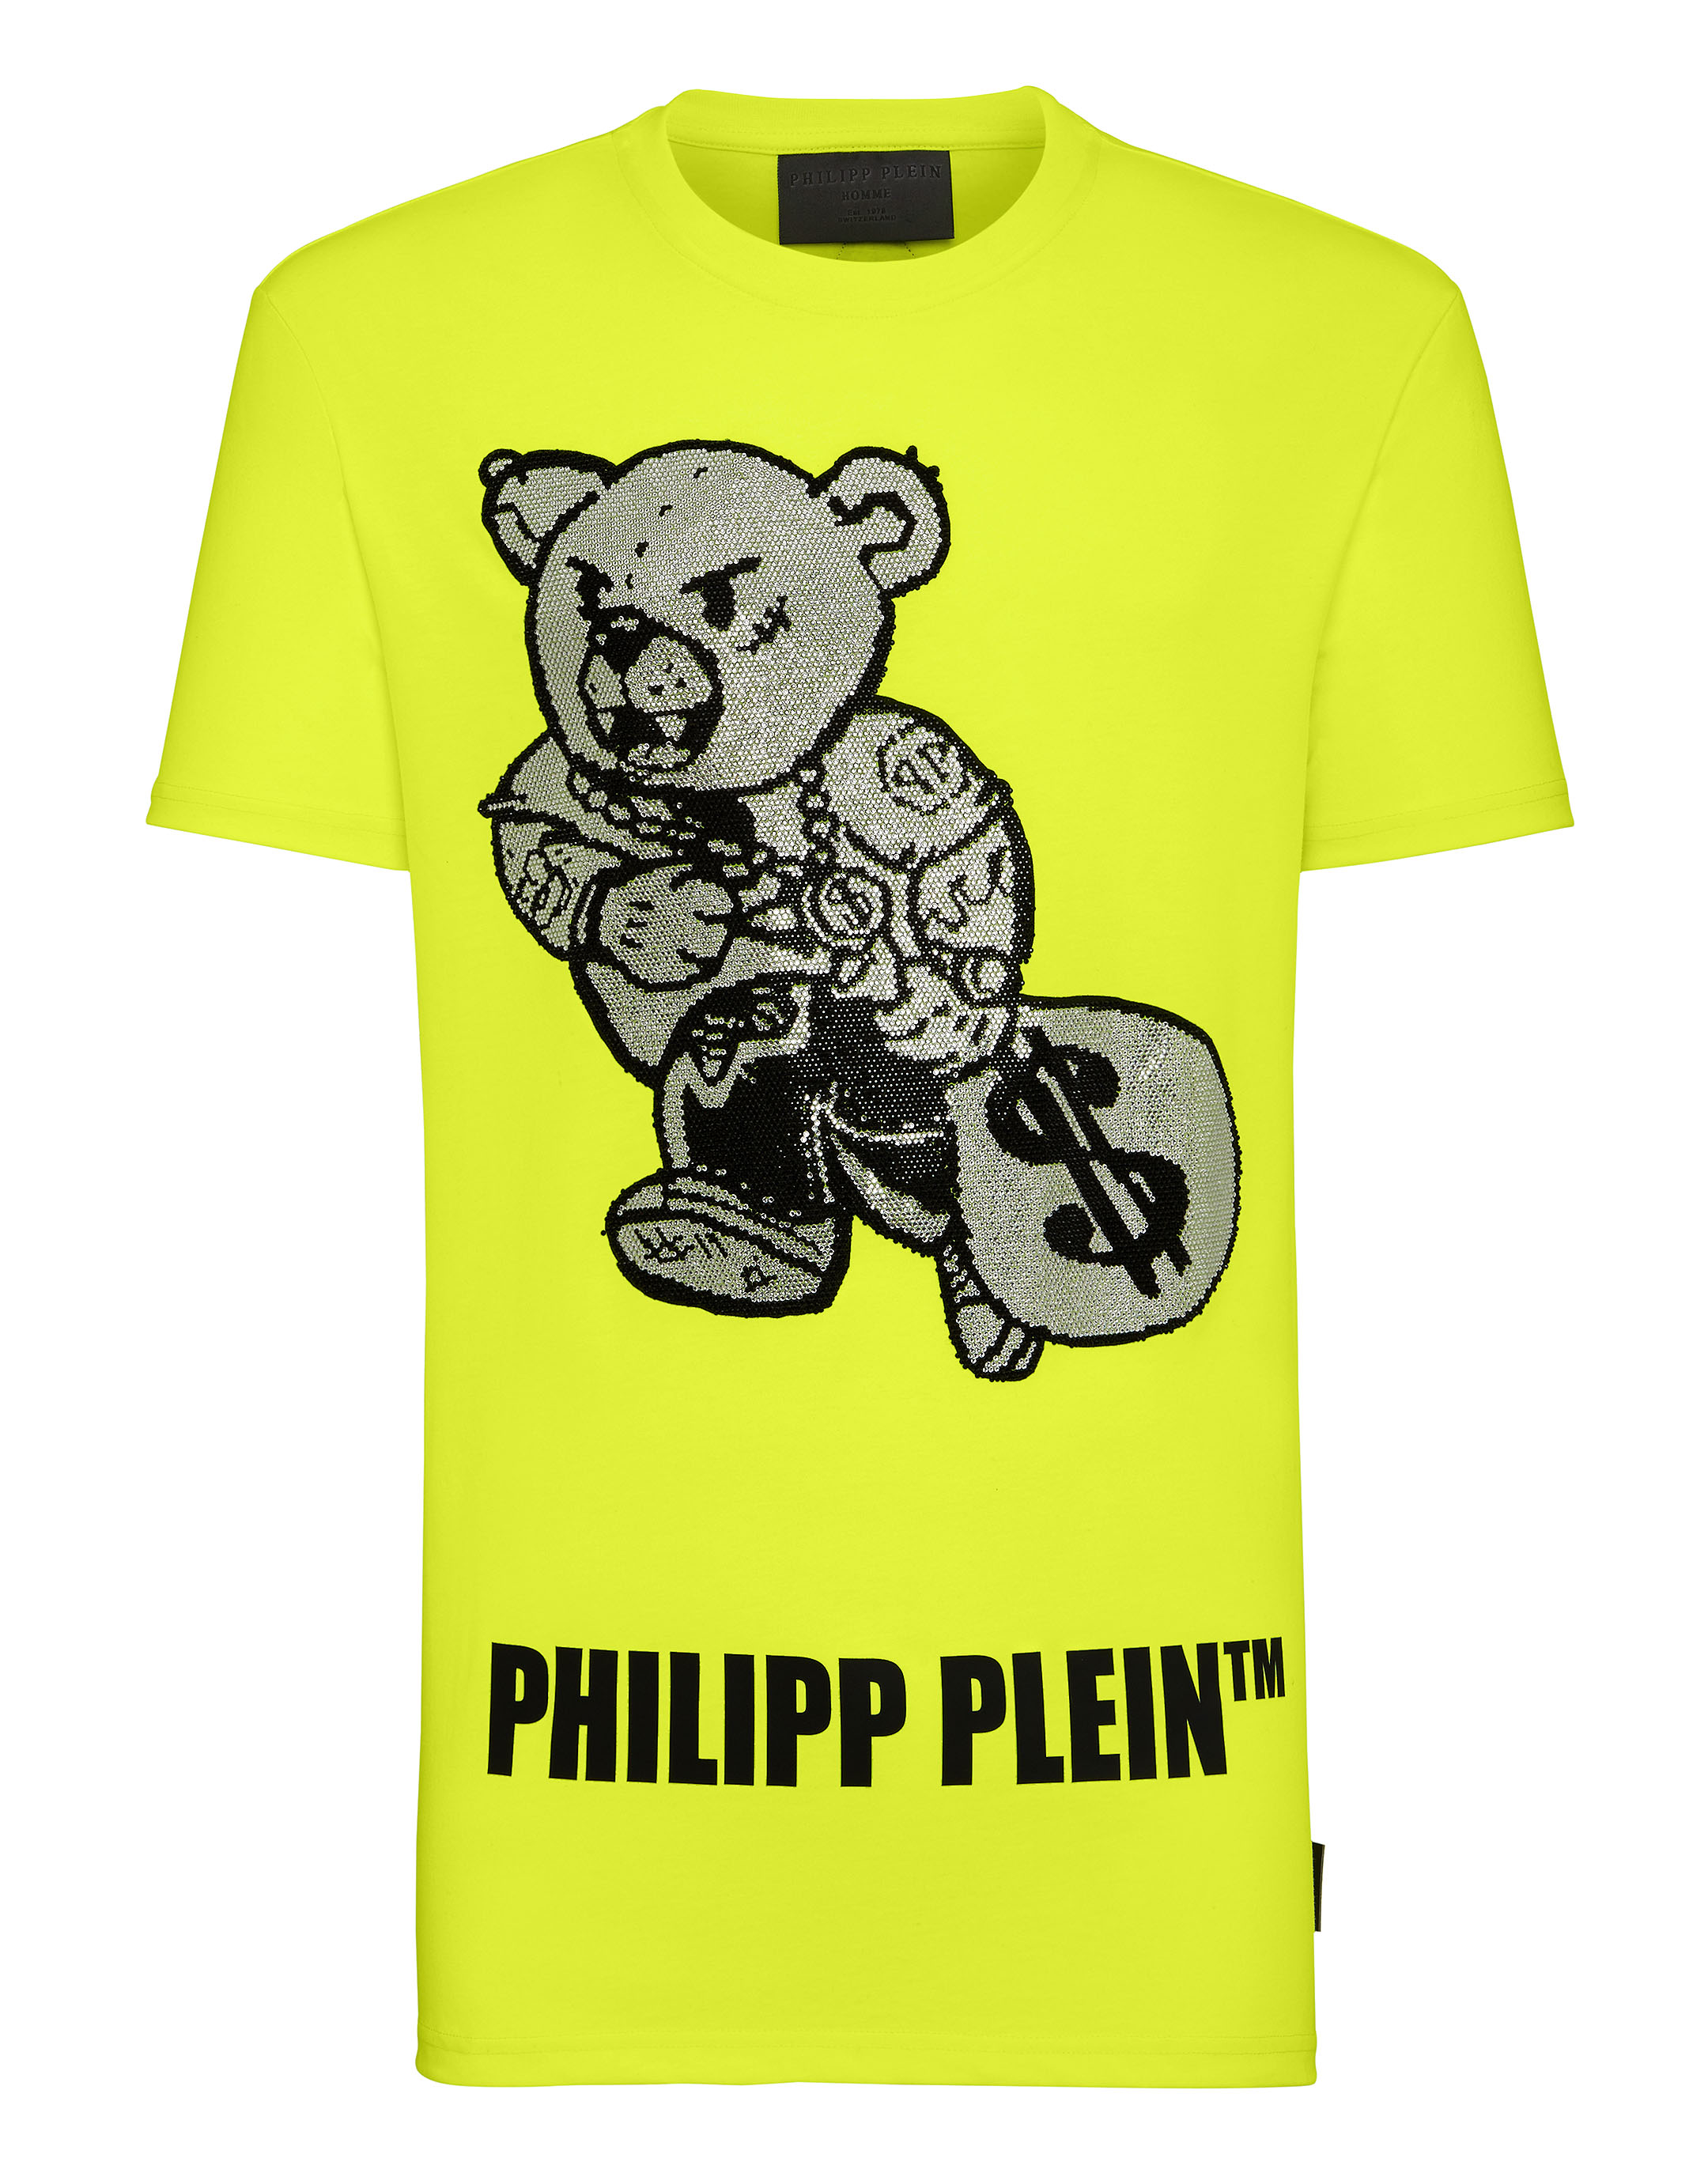 phillips plein t shirt